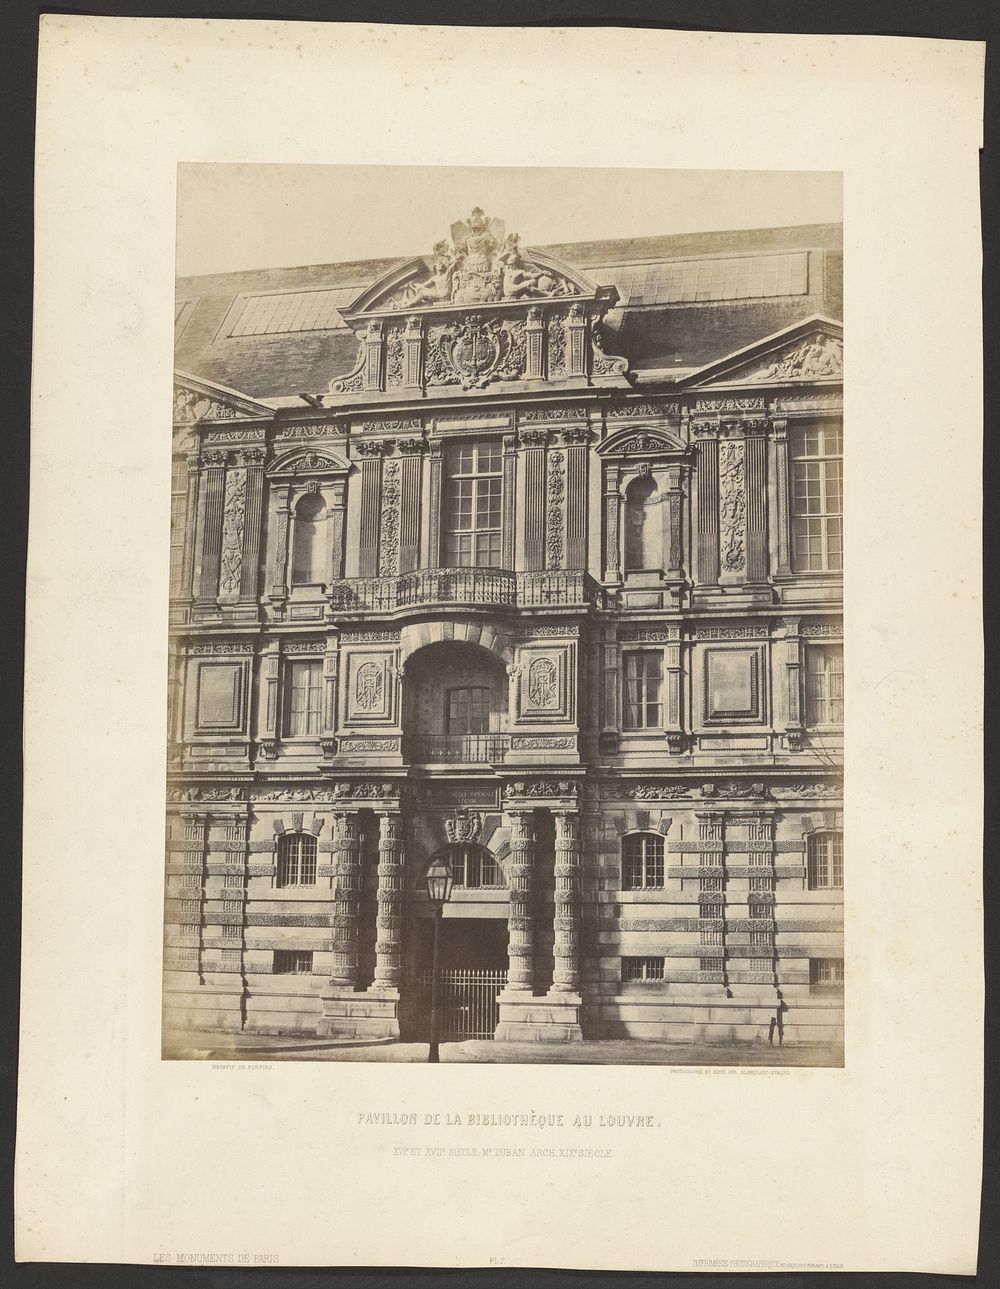 Pavillon de la Bibliotheque au Louvre by François Alphonse Fortier and Louis Désiré Blanquart Evrard